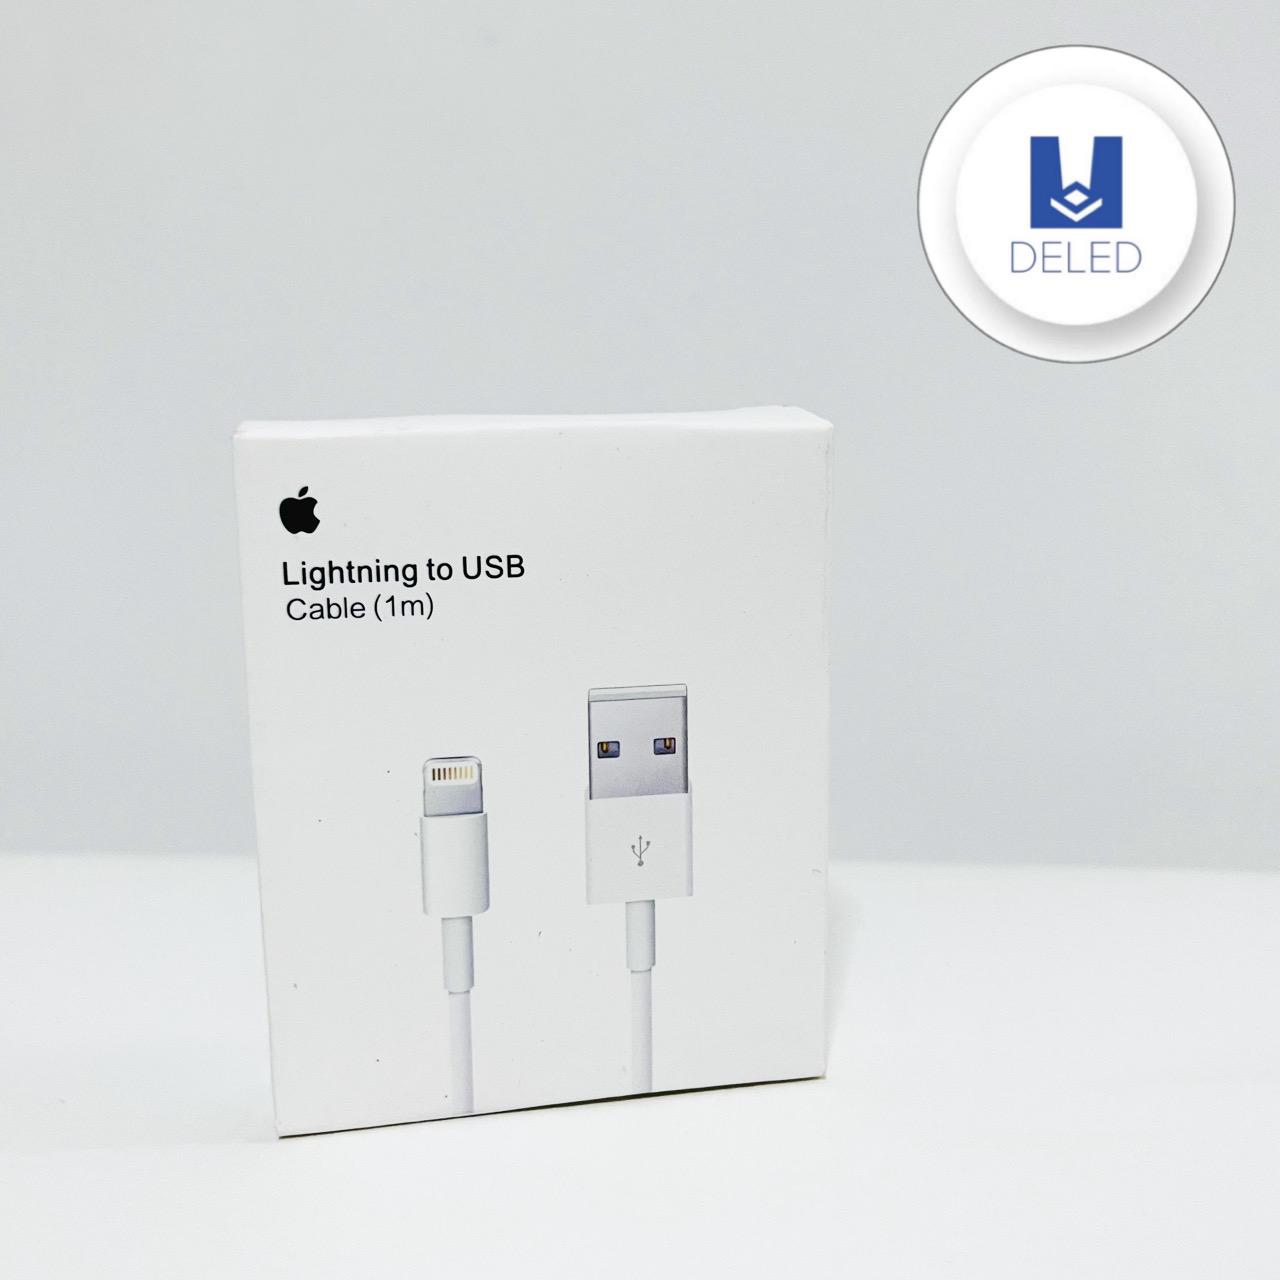 Cable Cargador USB Lightning para iPhone 1 Metro Calidad Original APPLE